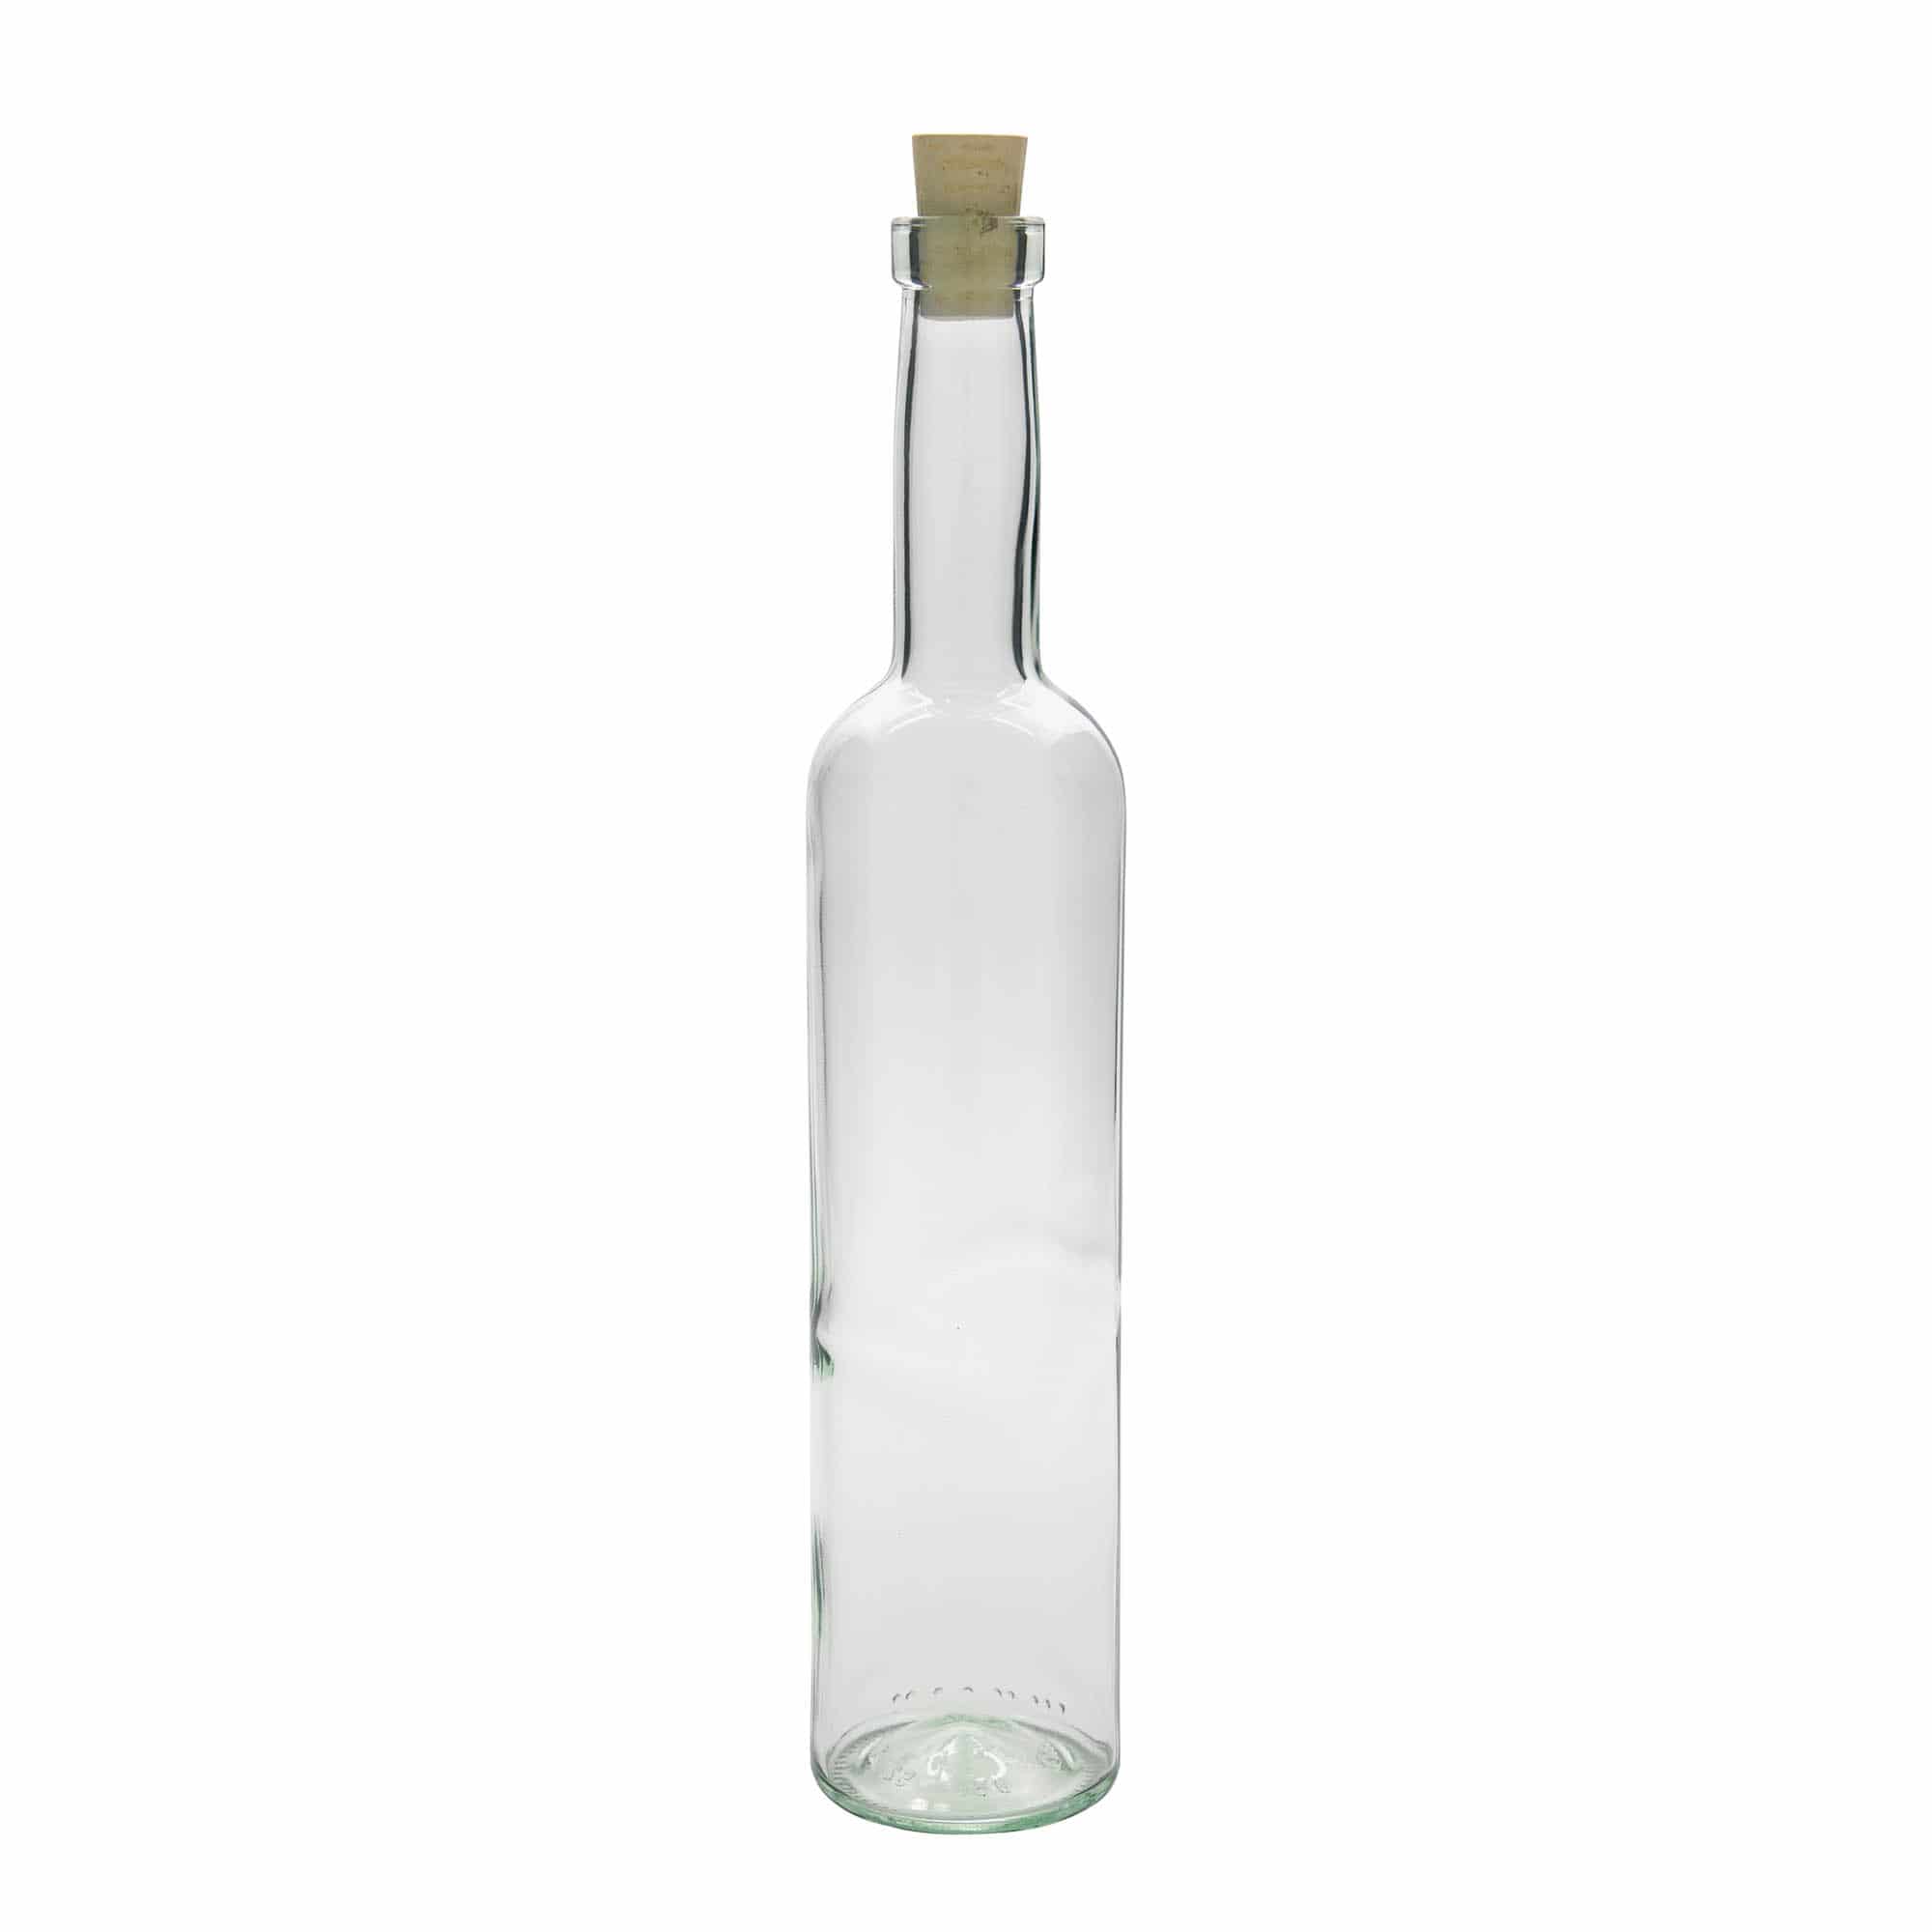 500 ml glass bottle 'Bordeaux', closure: cork